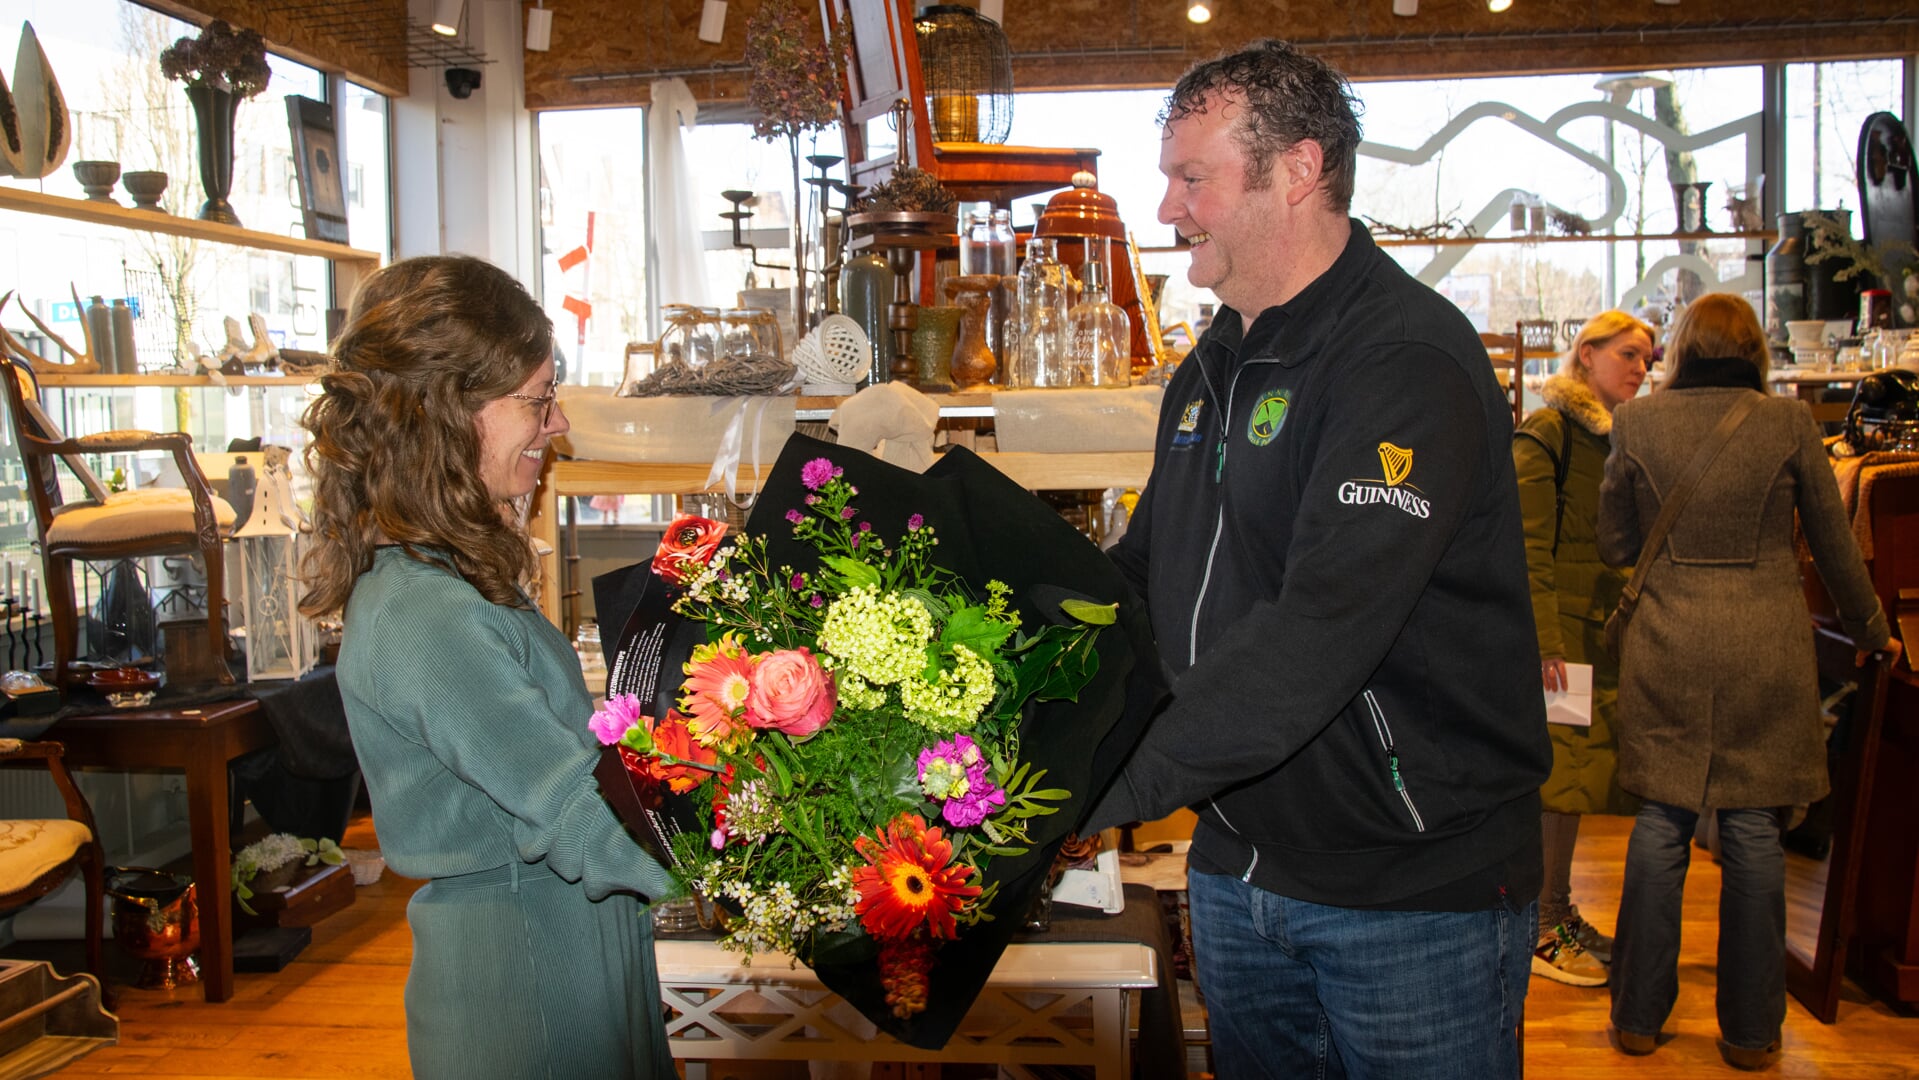 Anne-Marie Heiwegen van 't Spoorhuis neemt een boeket bloemen en de prijs voor de etalagewedstrijd in ontvangst.